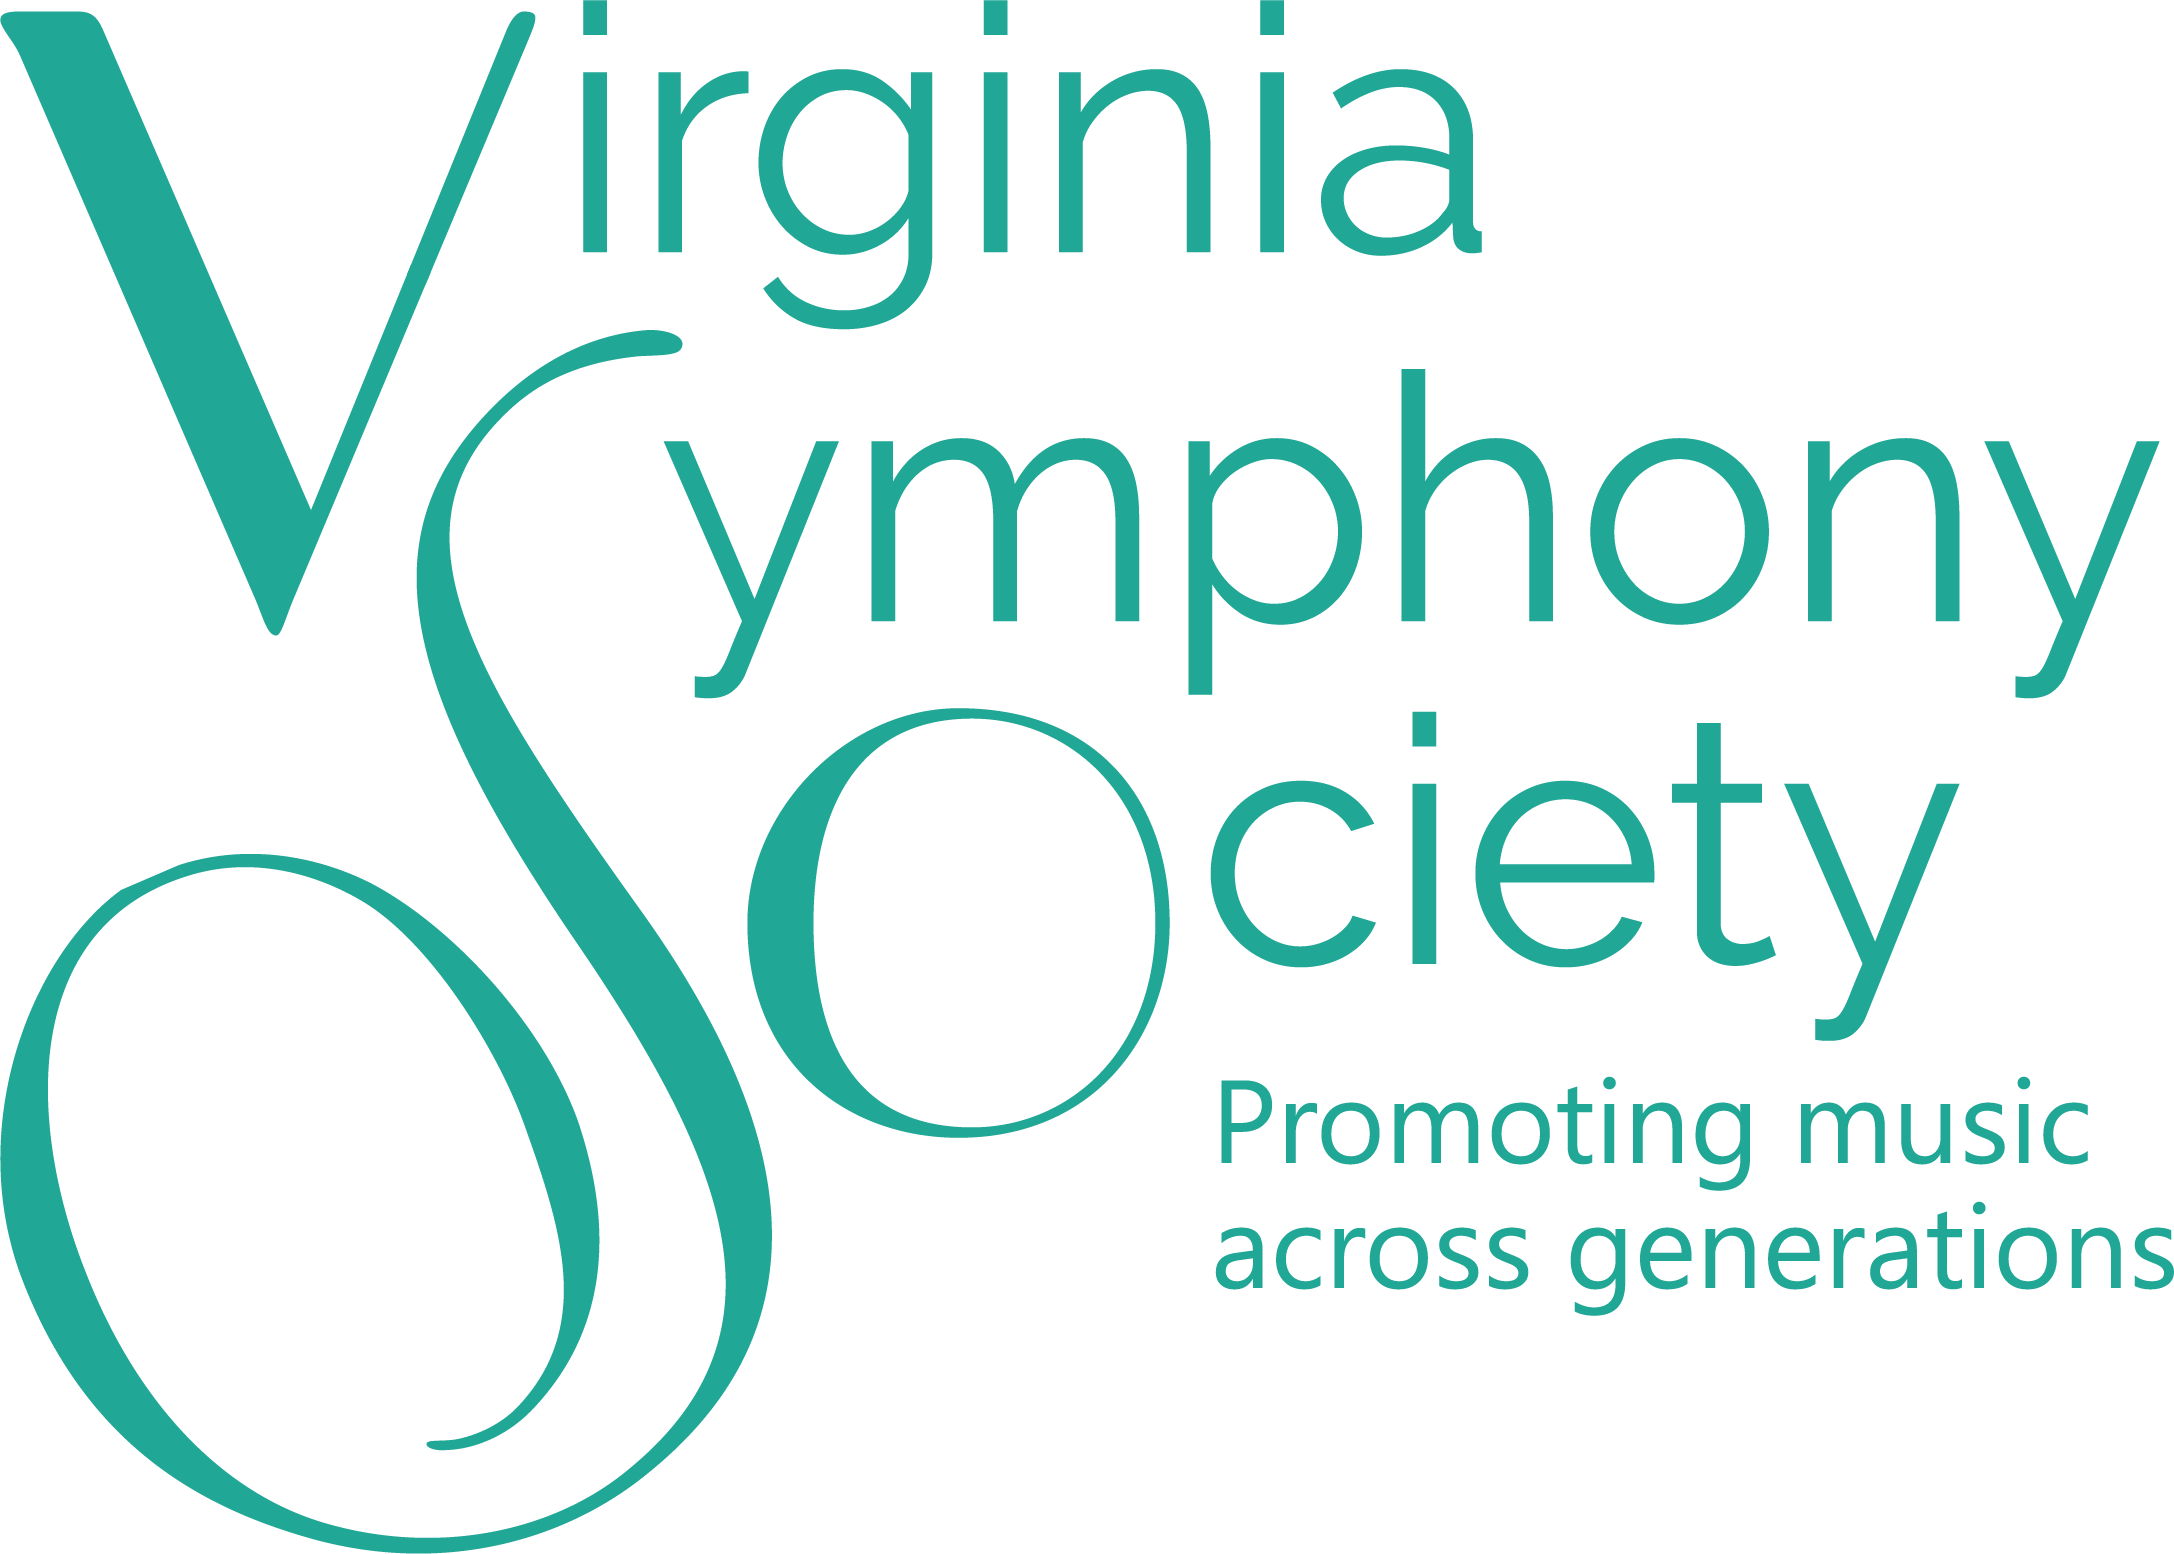 Virginia Symphony Society